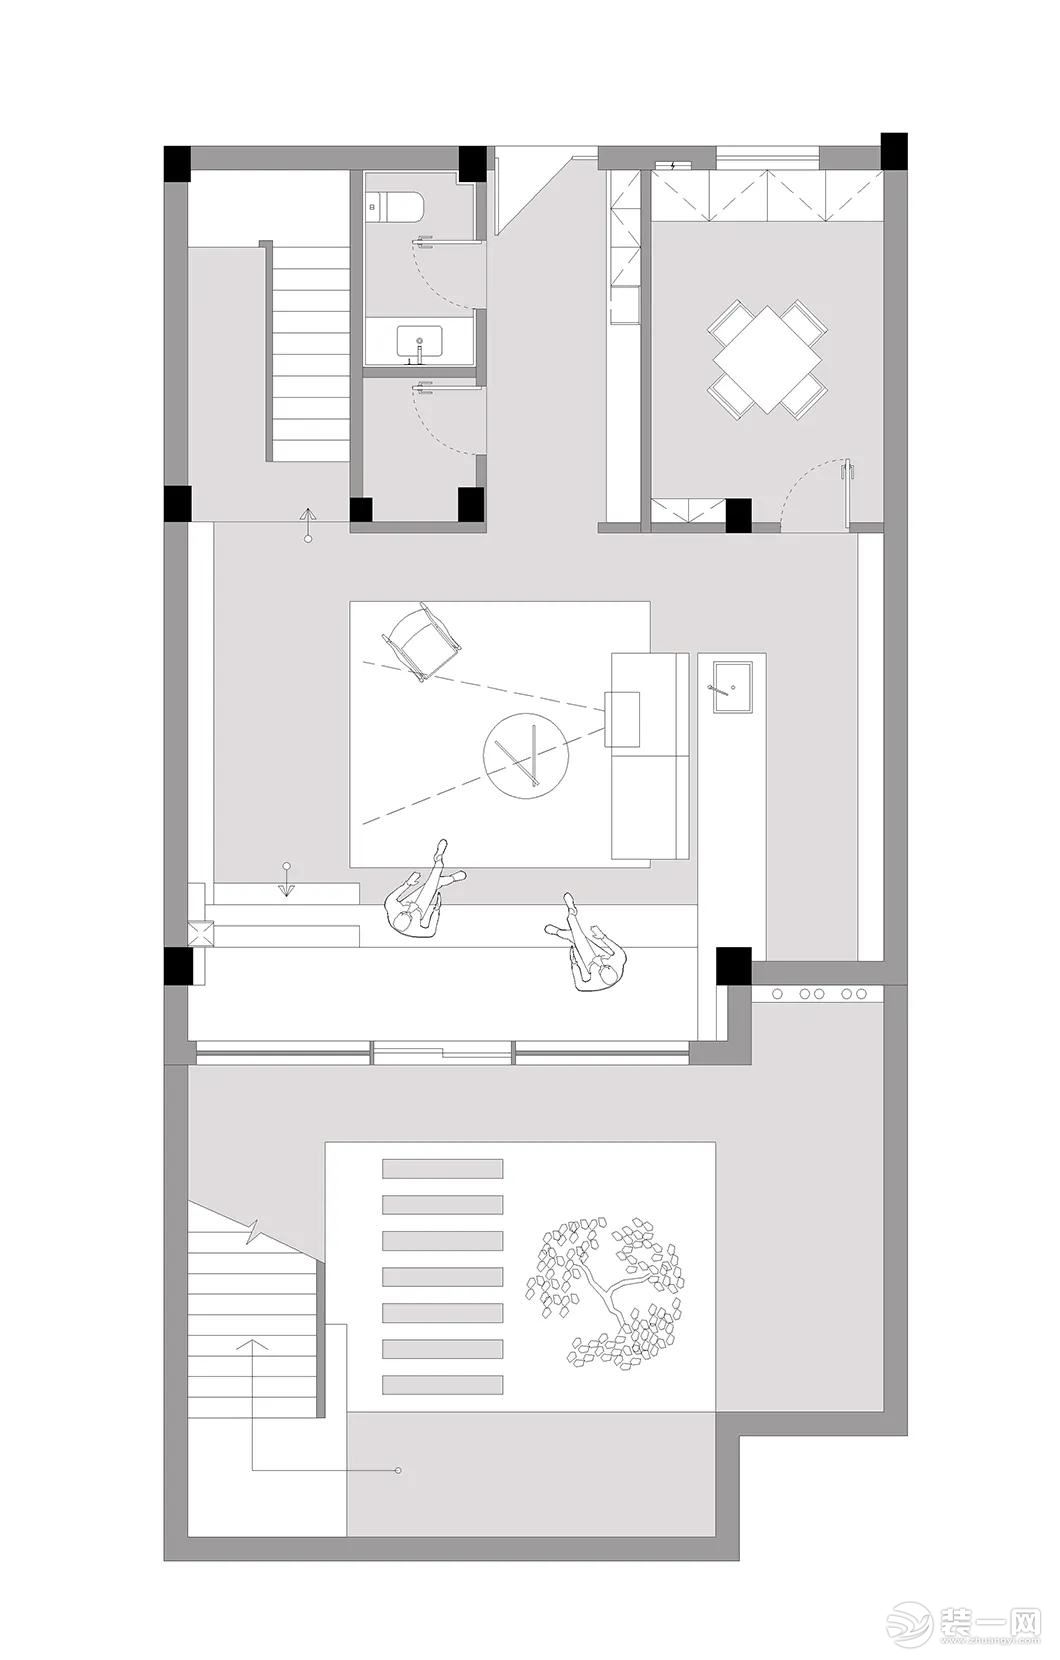 450㎡自建别墅设计——平面布置图1